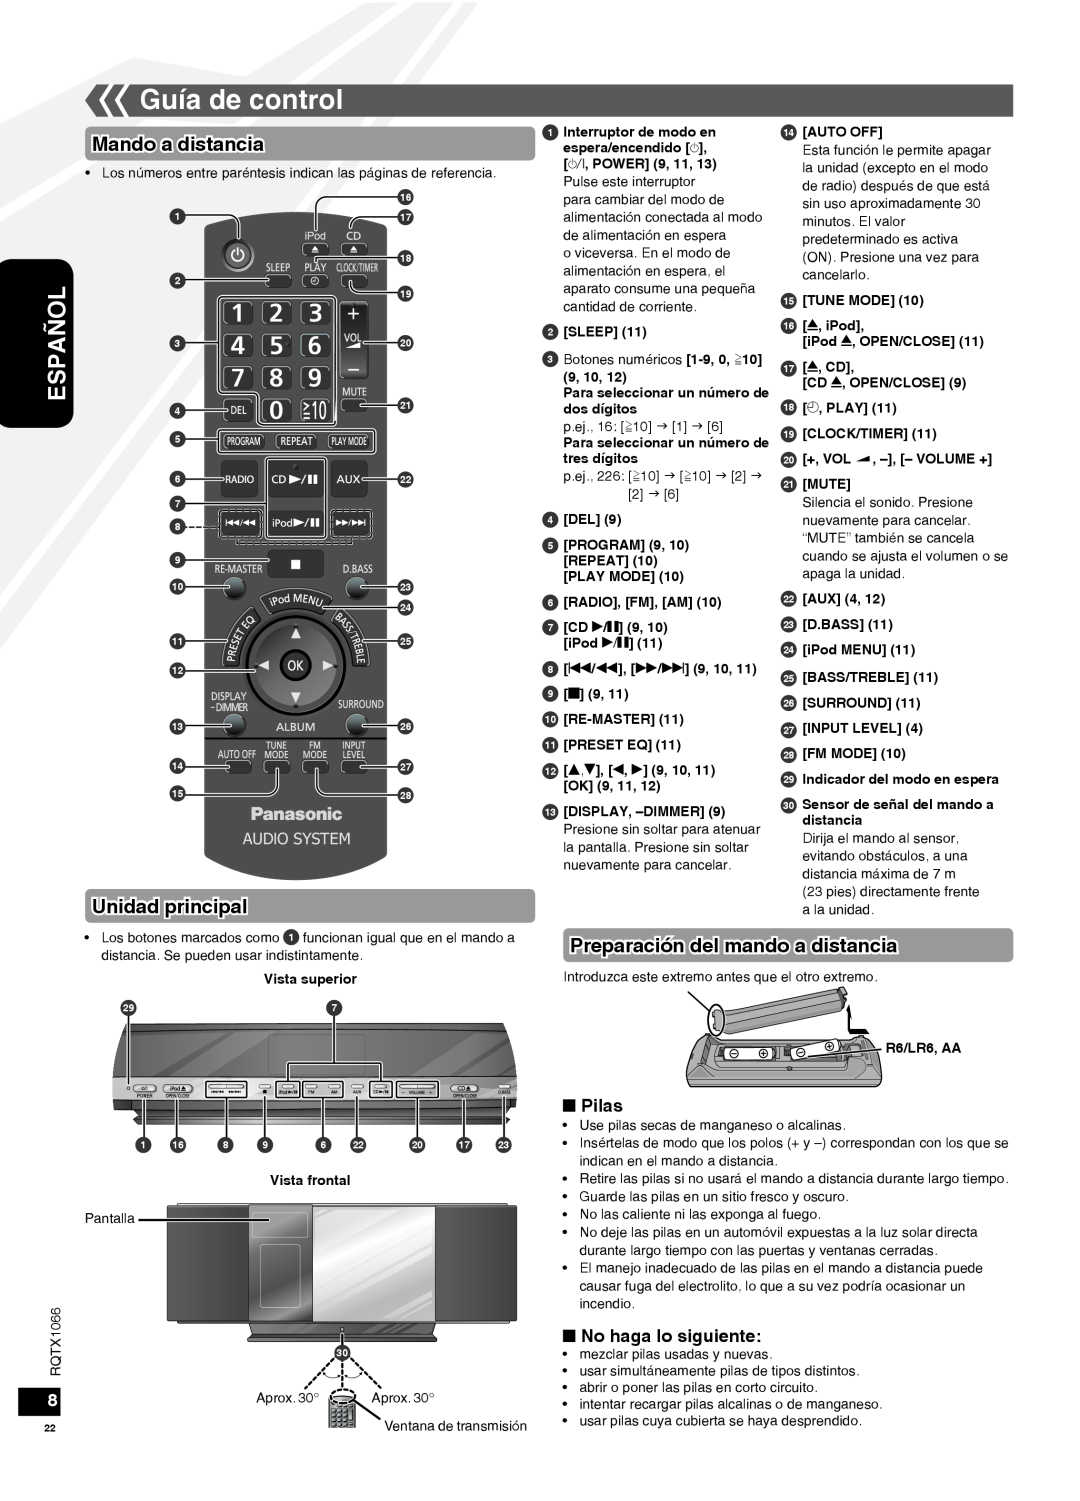 Panasonic SC-HC30 Guía de control, Mando a distancia, Unidad principal, Preparación del mando a distancia, Pilas 